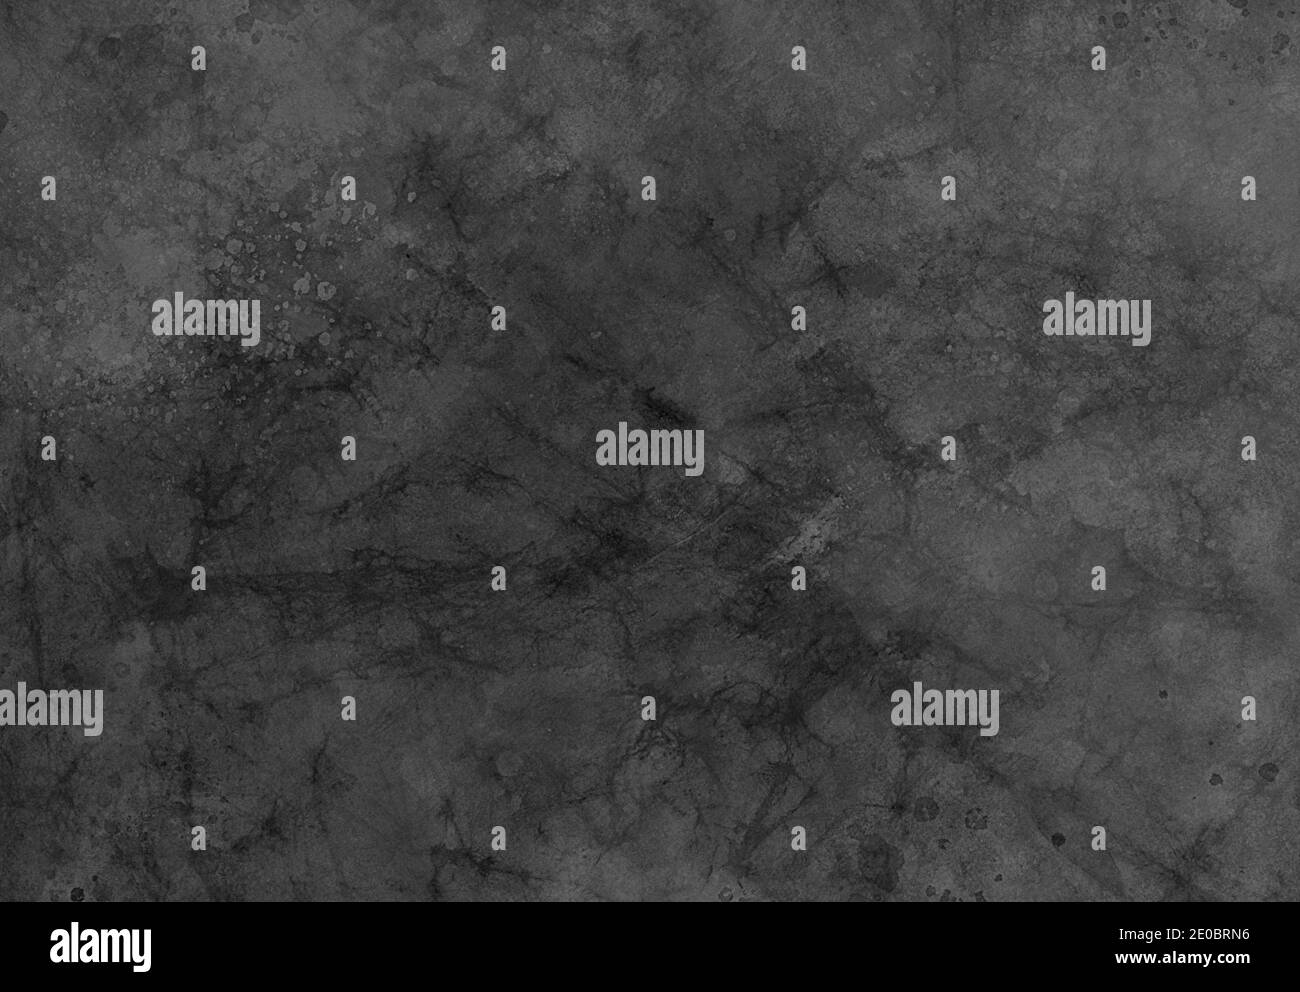 Trama di fondo nera, vecchia vernice grunge spruzzata su carta stropicciata stropicciata con crepe scure marmorizzate con motivo grugnoso Foto Stock